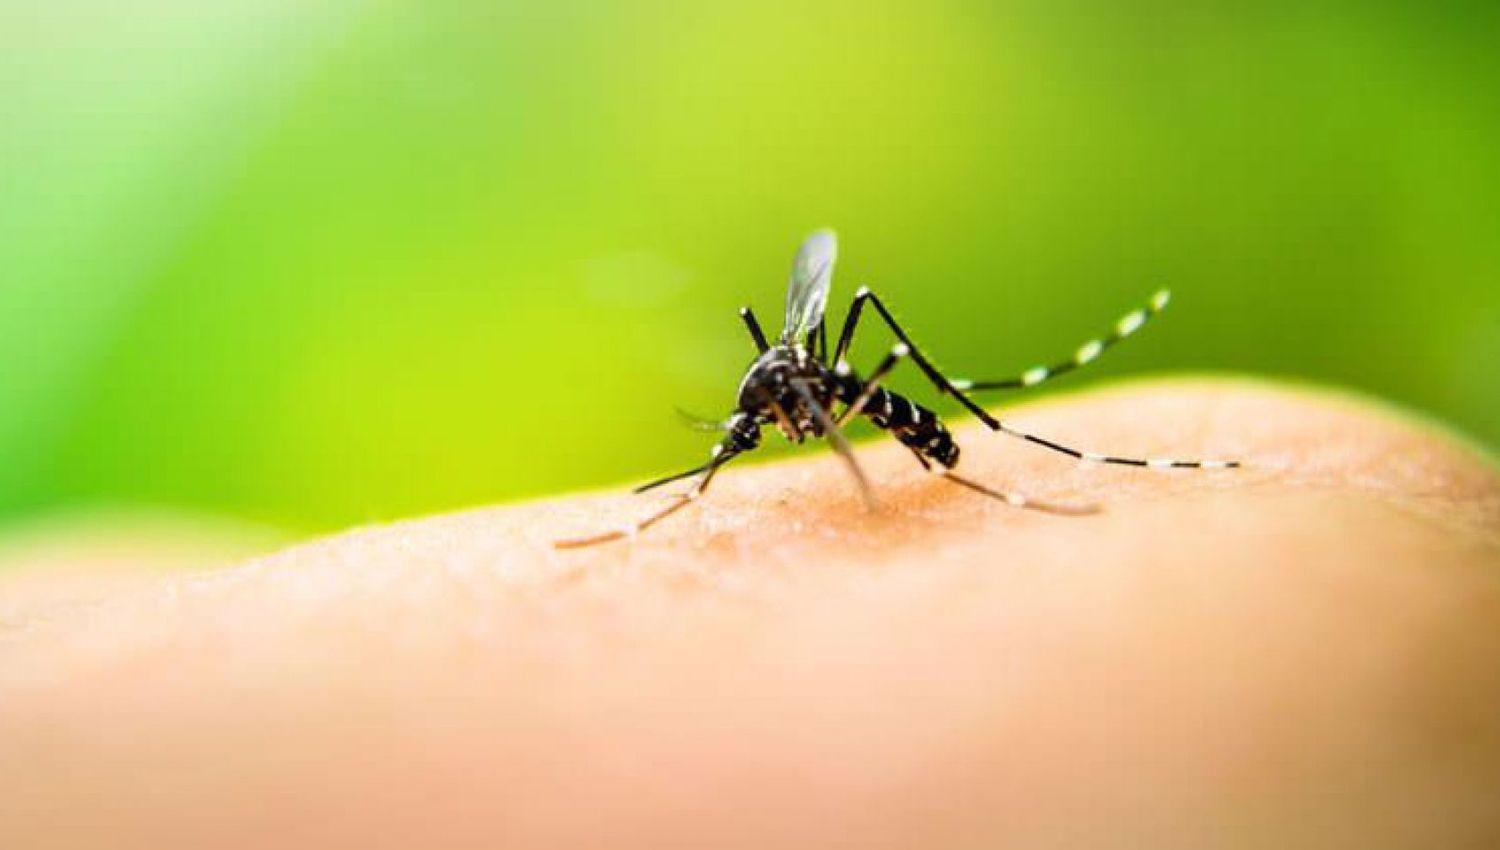 Hay 3 casos maacutes de dengue en Santiago del Estero